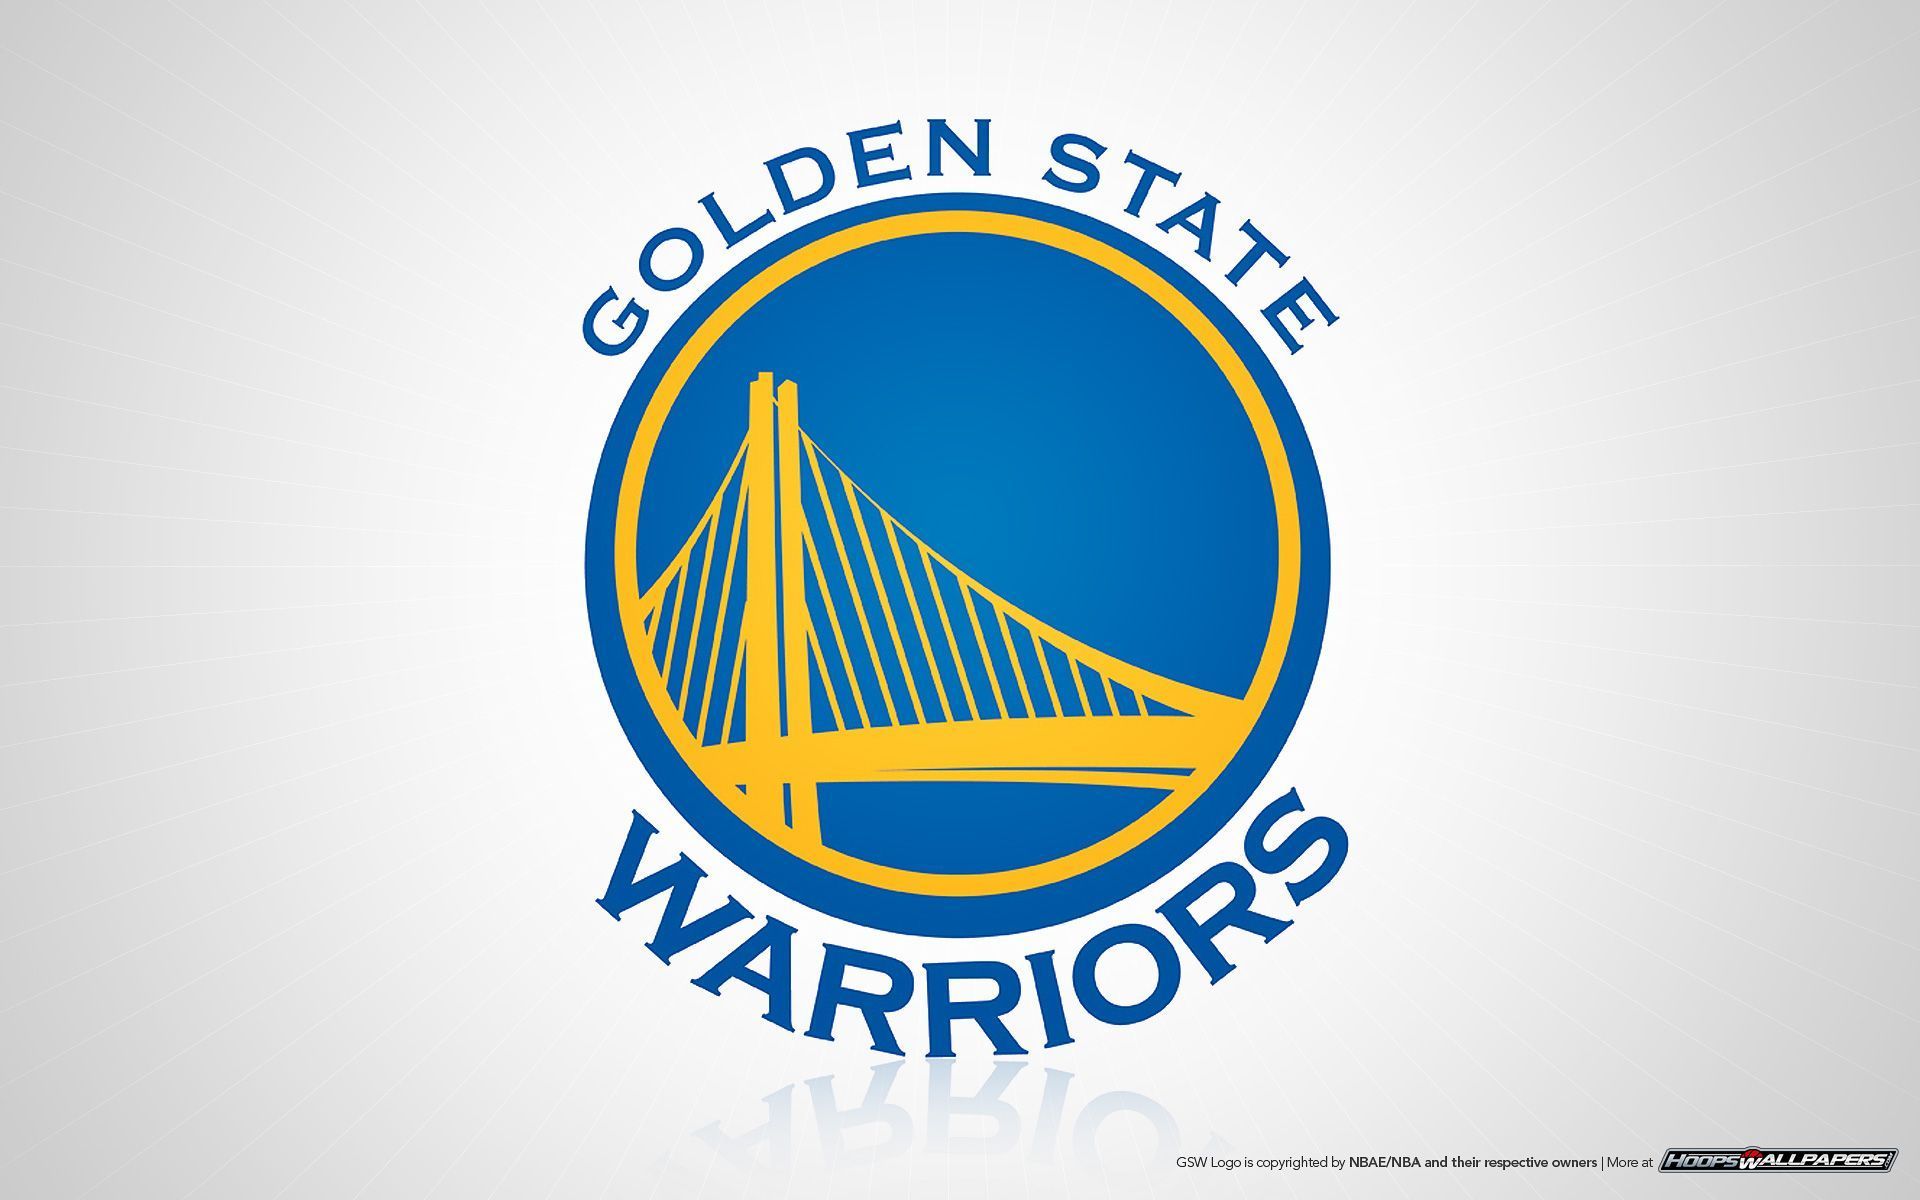 Golden State Warriors  Basketball Team  Logo Wallpaper Download  MobCup